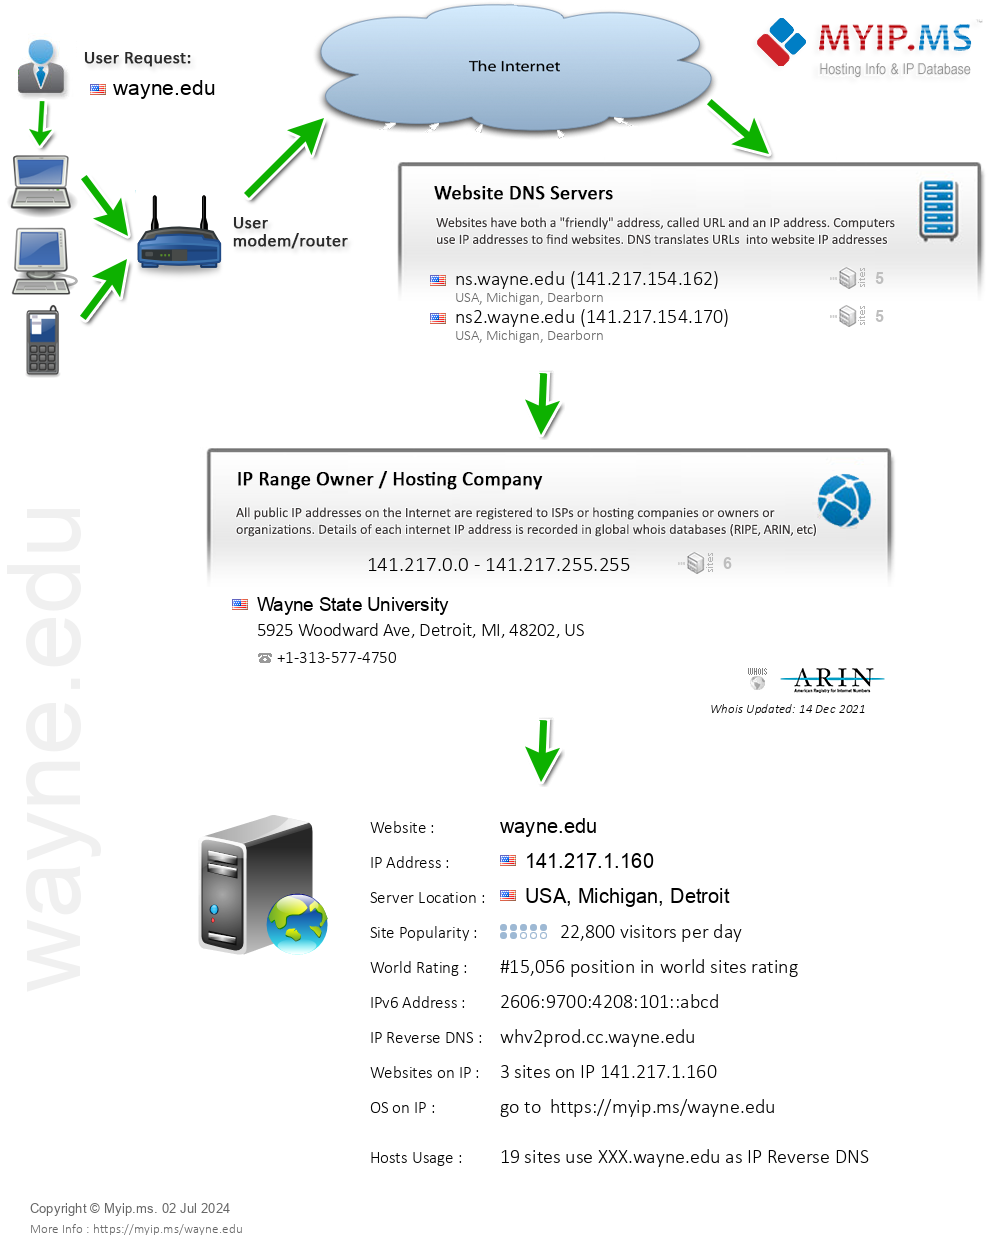 Wayne.edu - Website Hosting Visual IP Diagram